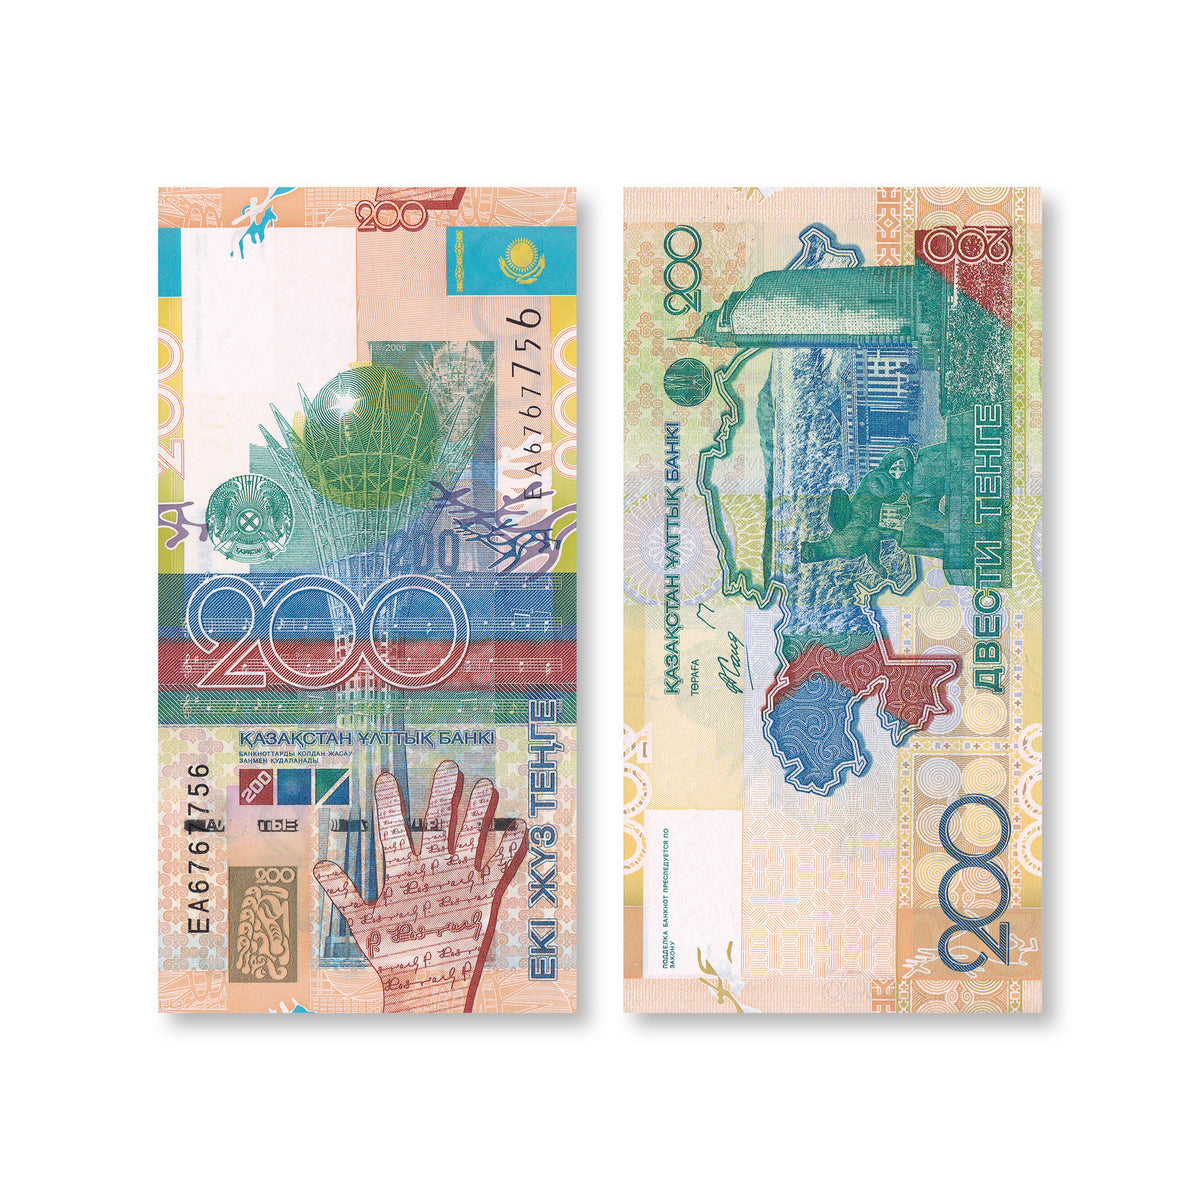 Kazakhstan 200 Tenge, 2006, B128a, P28, UNC - Robert's World Money - World Banknotes